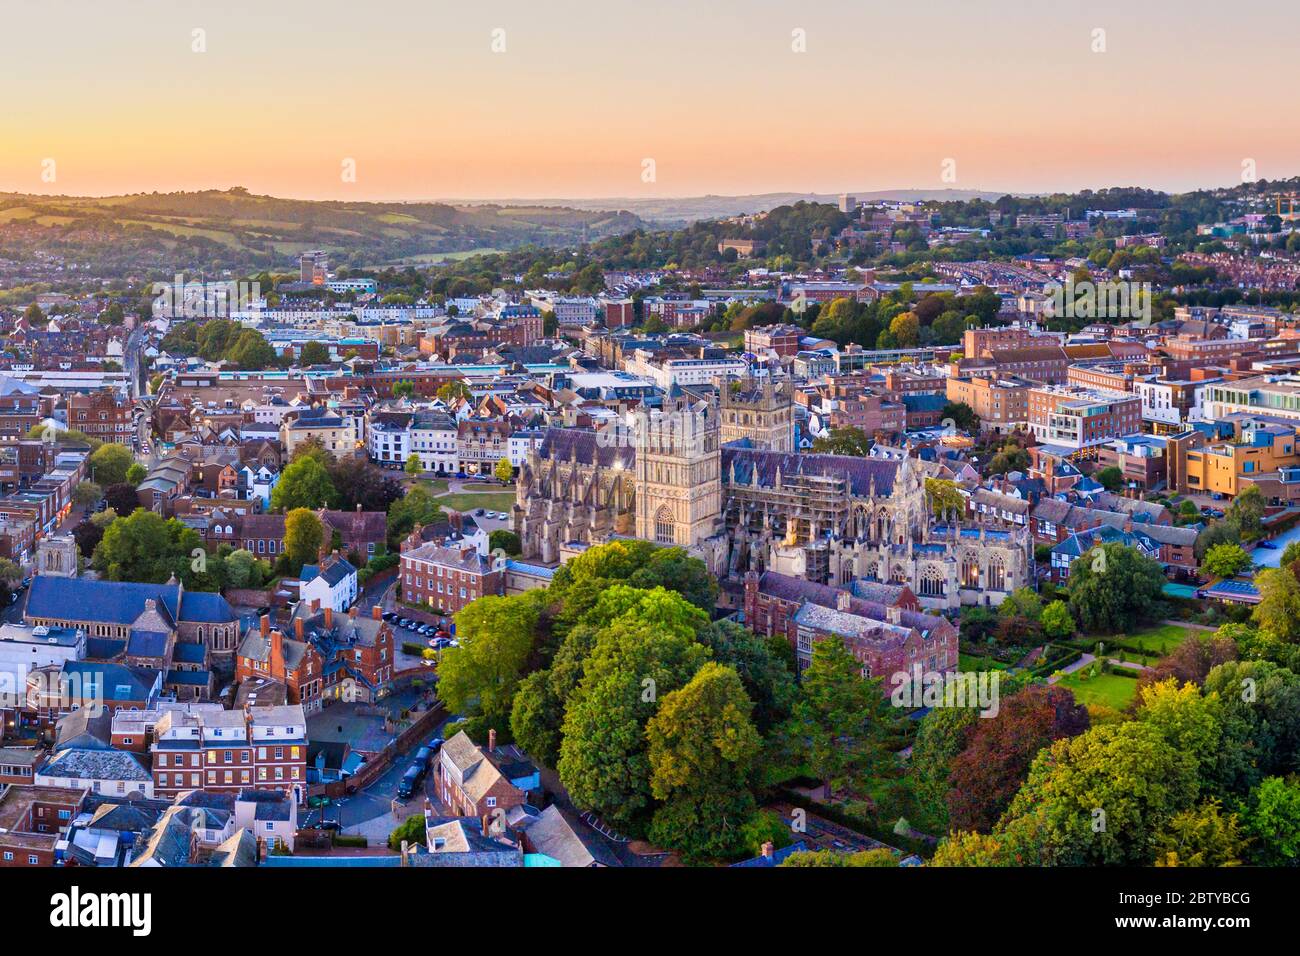 Vue aérienne sur le centre-ville d'Exeter et la cathédrale d'Exeter, Exeter, Devon, Angleterre, Royaume-Uni, Europe Banque D'Images